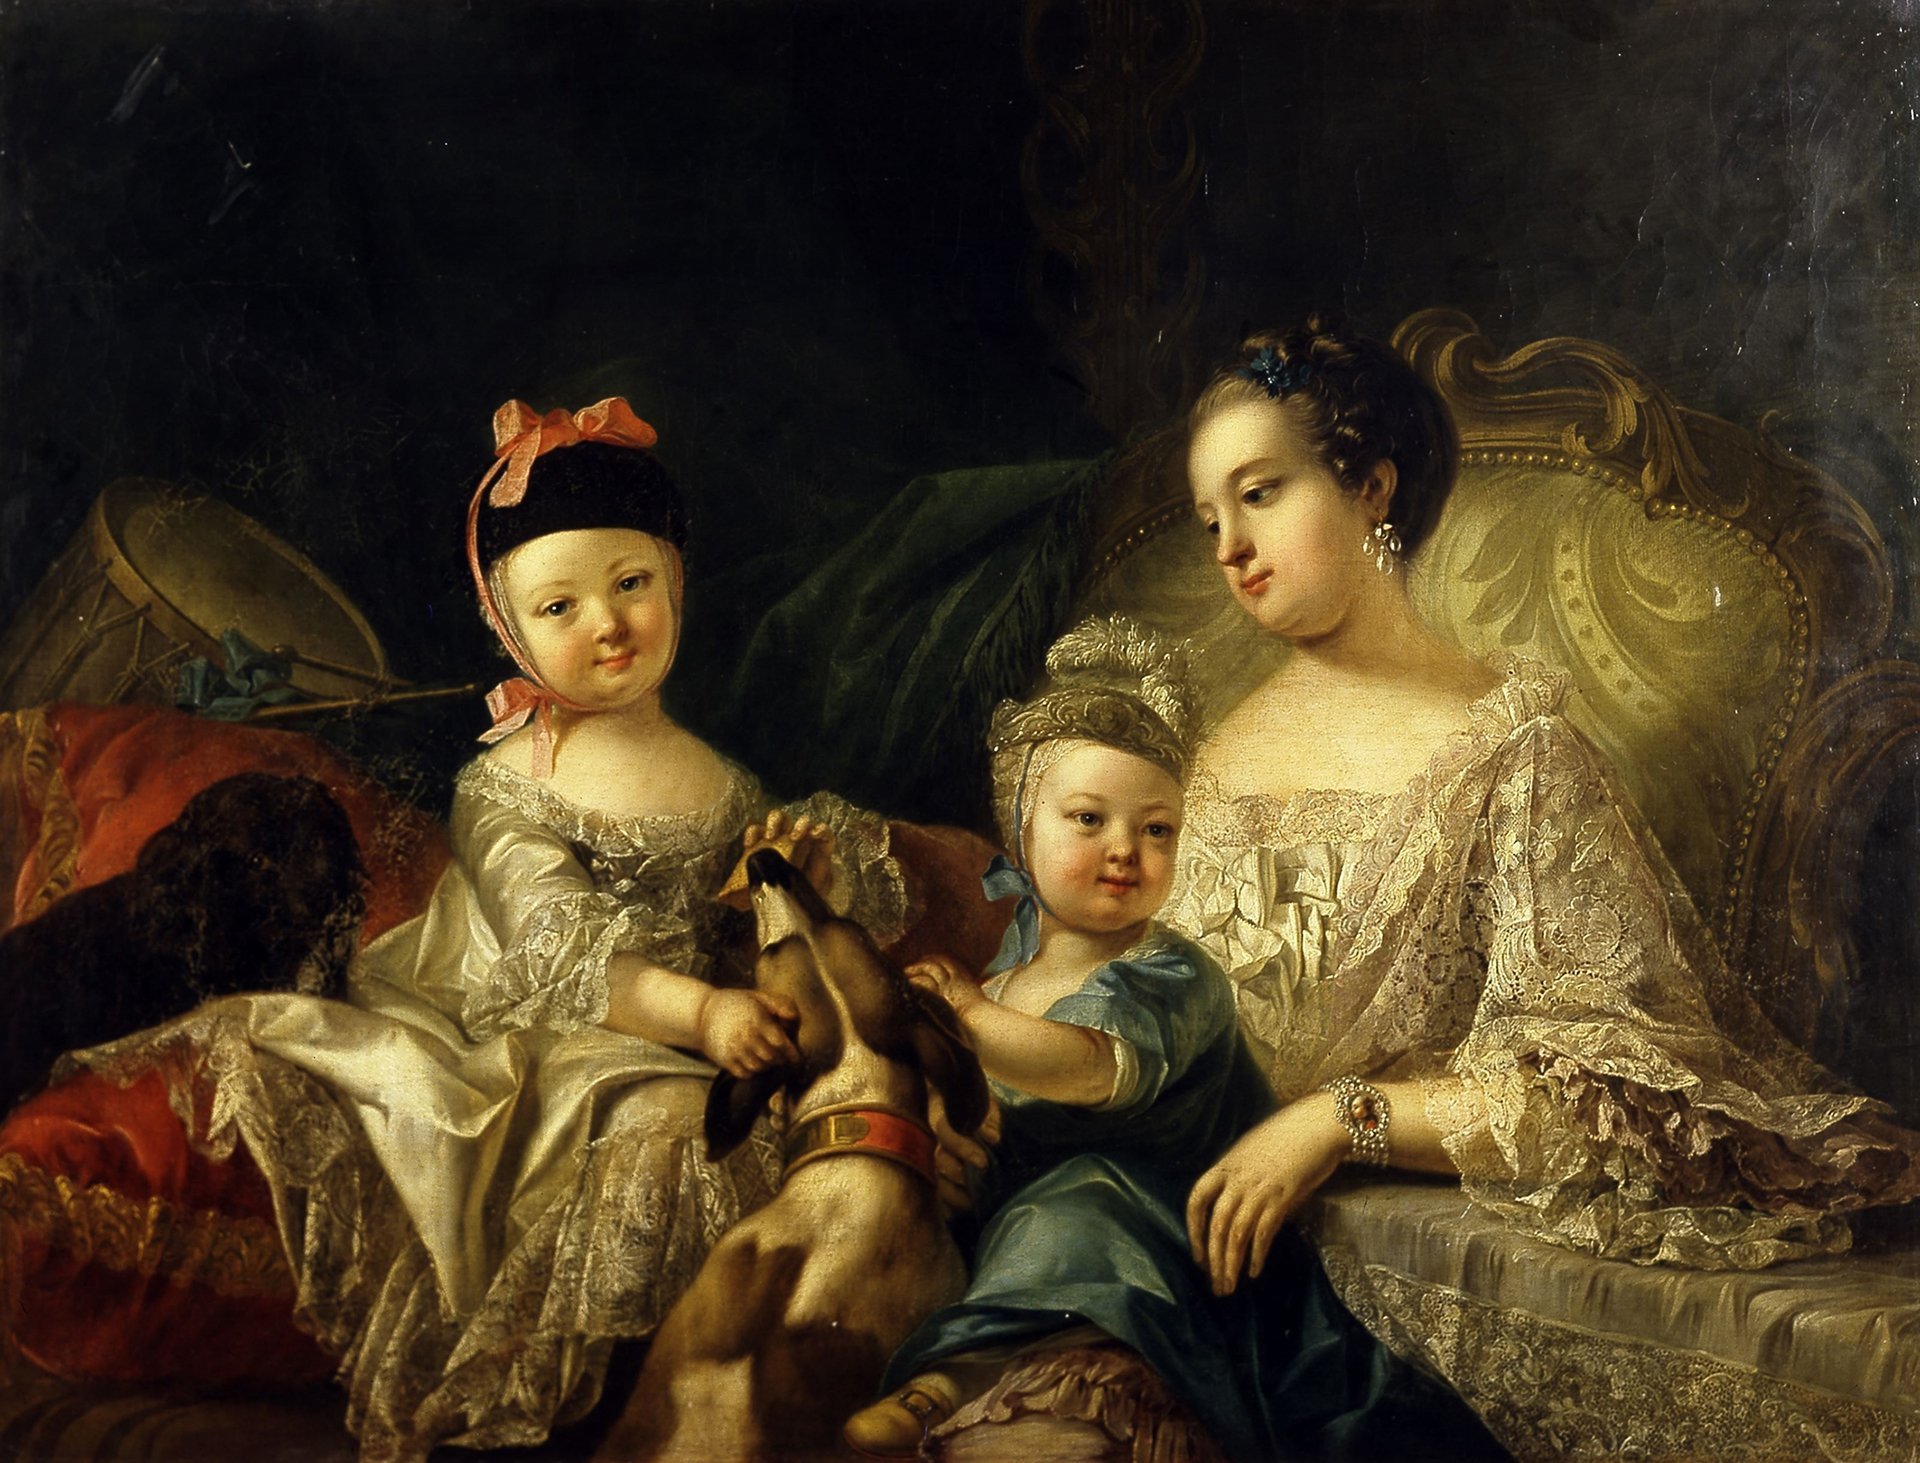 Abbildung des Werks "Karoline Luise mit ihren zwei Söhnen" von Joseph Melling aus dem Jahr 1757.